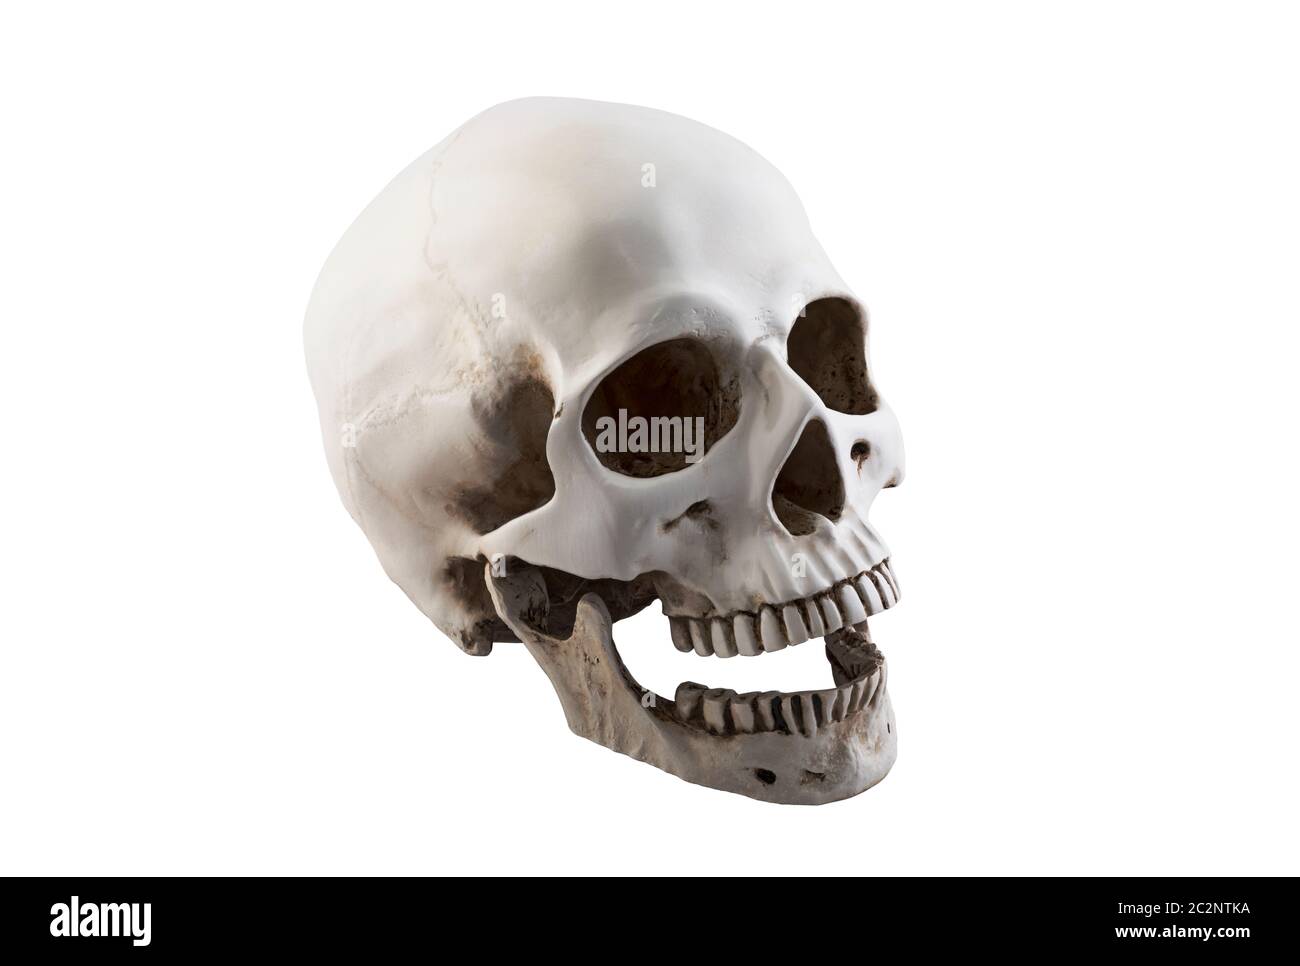 Cranio umano con ganascia aperta isolata su sfondo bianco con tracciato di ritaglio Foto Stock